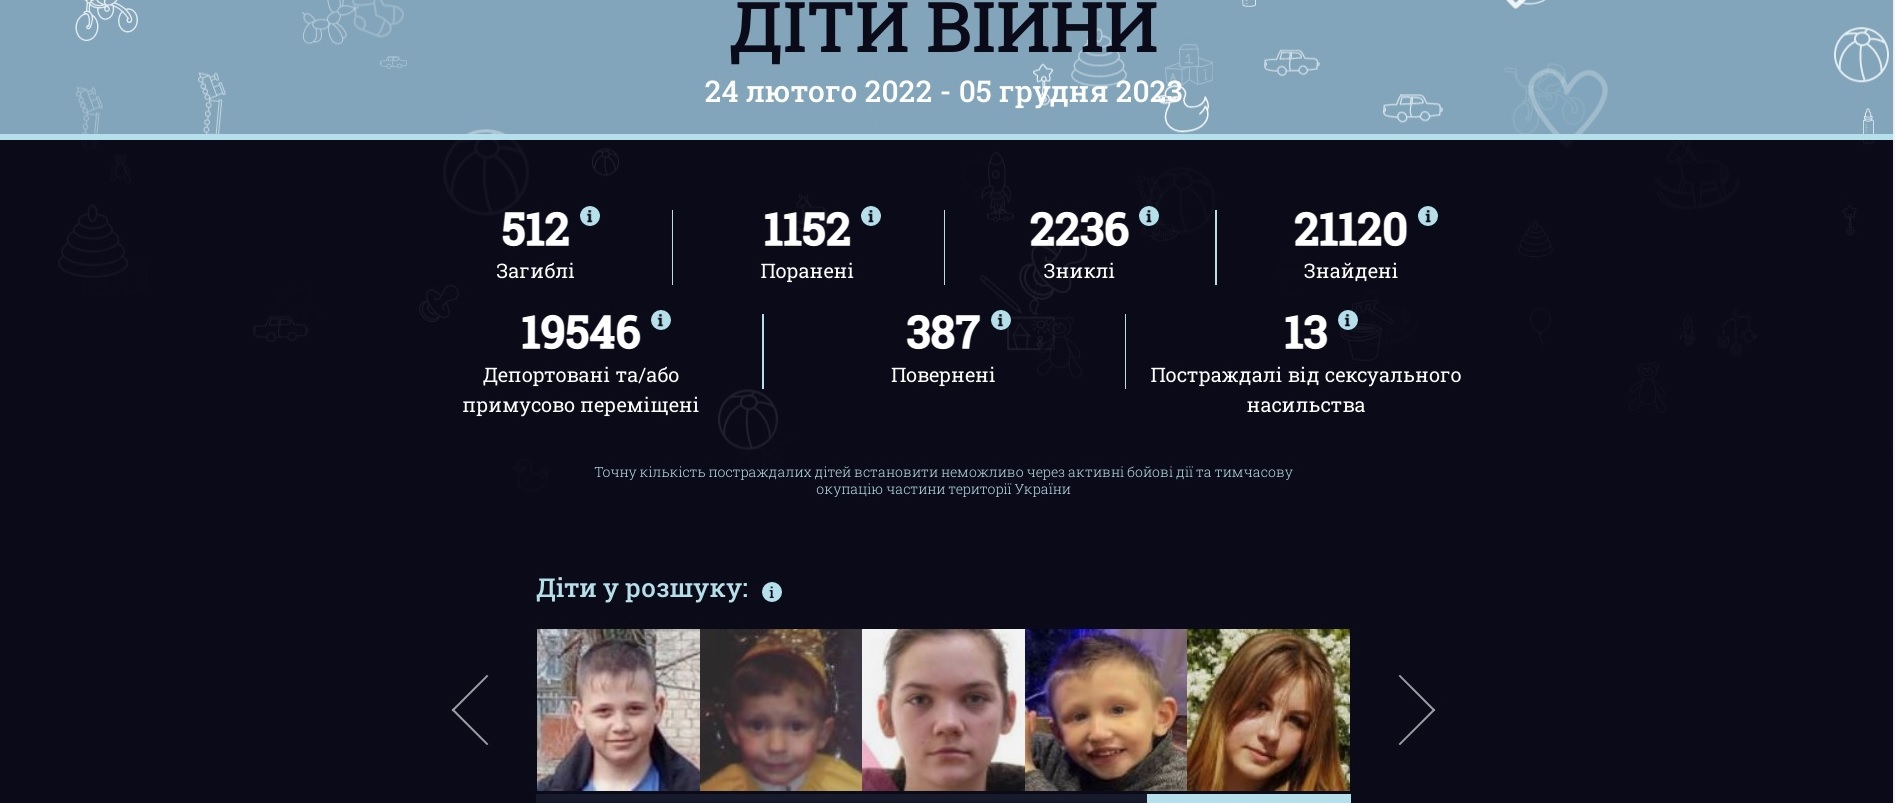 19 546 українських дітей депортовані або примусово переміщені. Скрин: childrenofwar.gov.ua